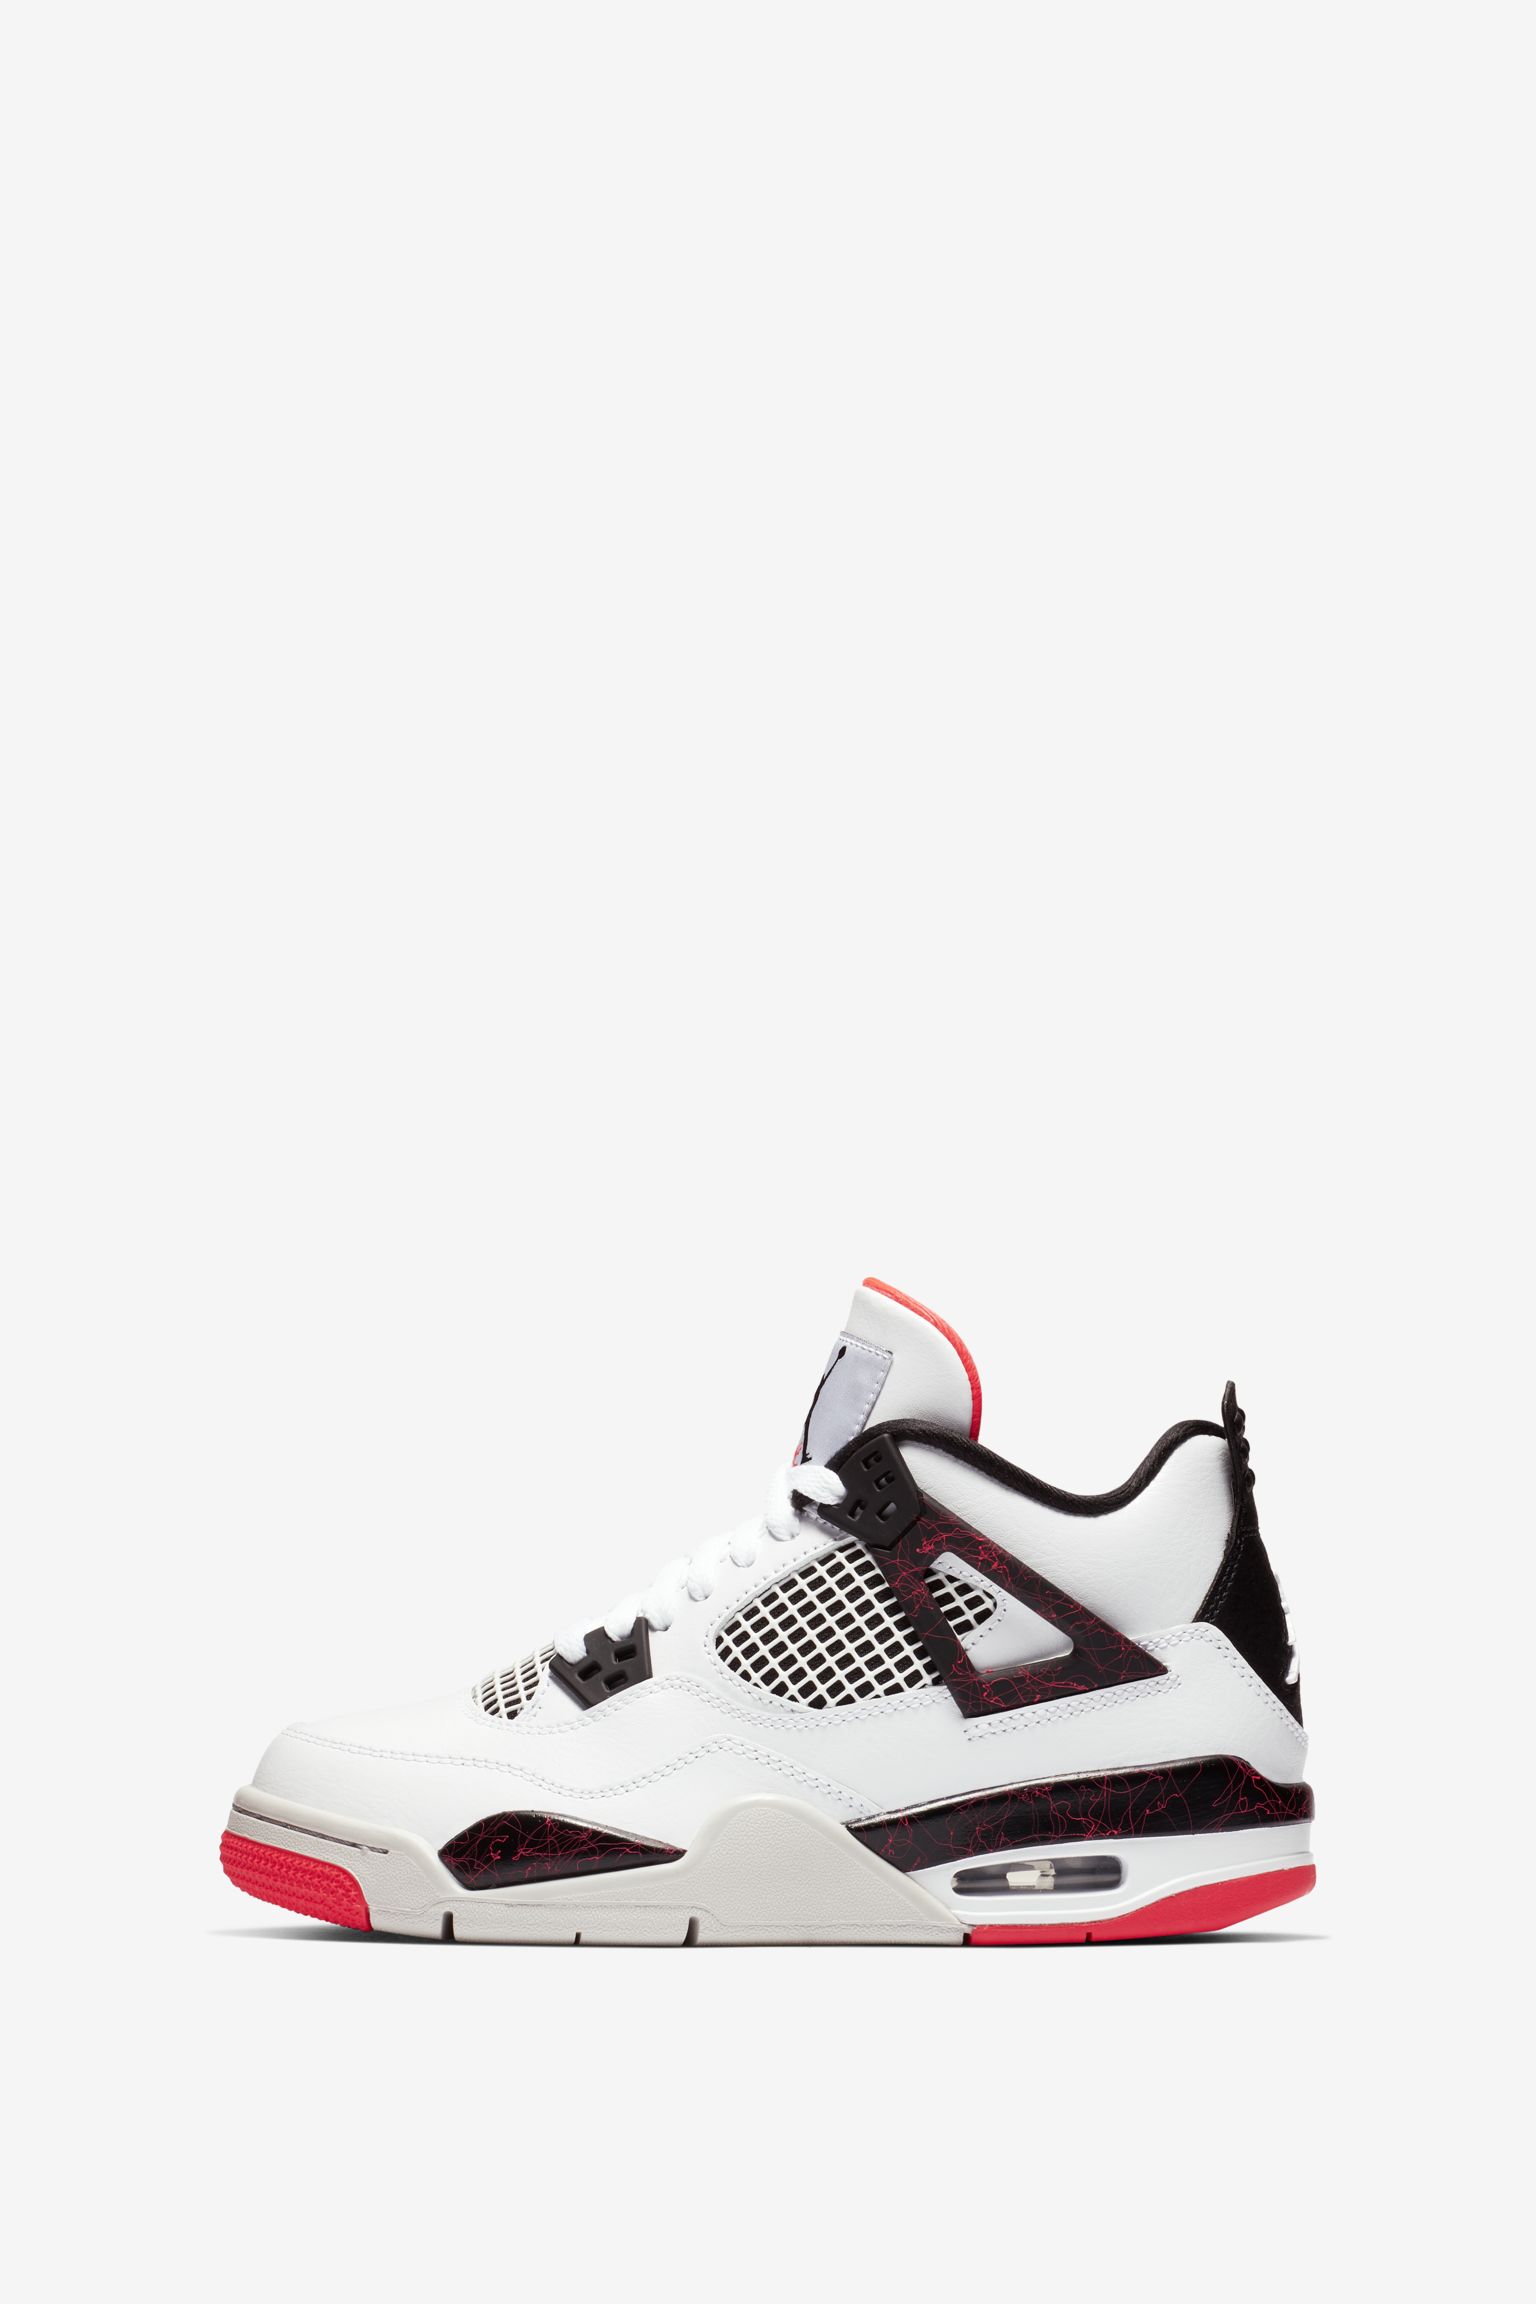 Air Jordan 4 'White \u0026 Bright Crimson \u0026 Black' Release Date. Nike SNKRS